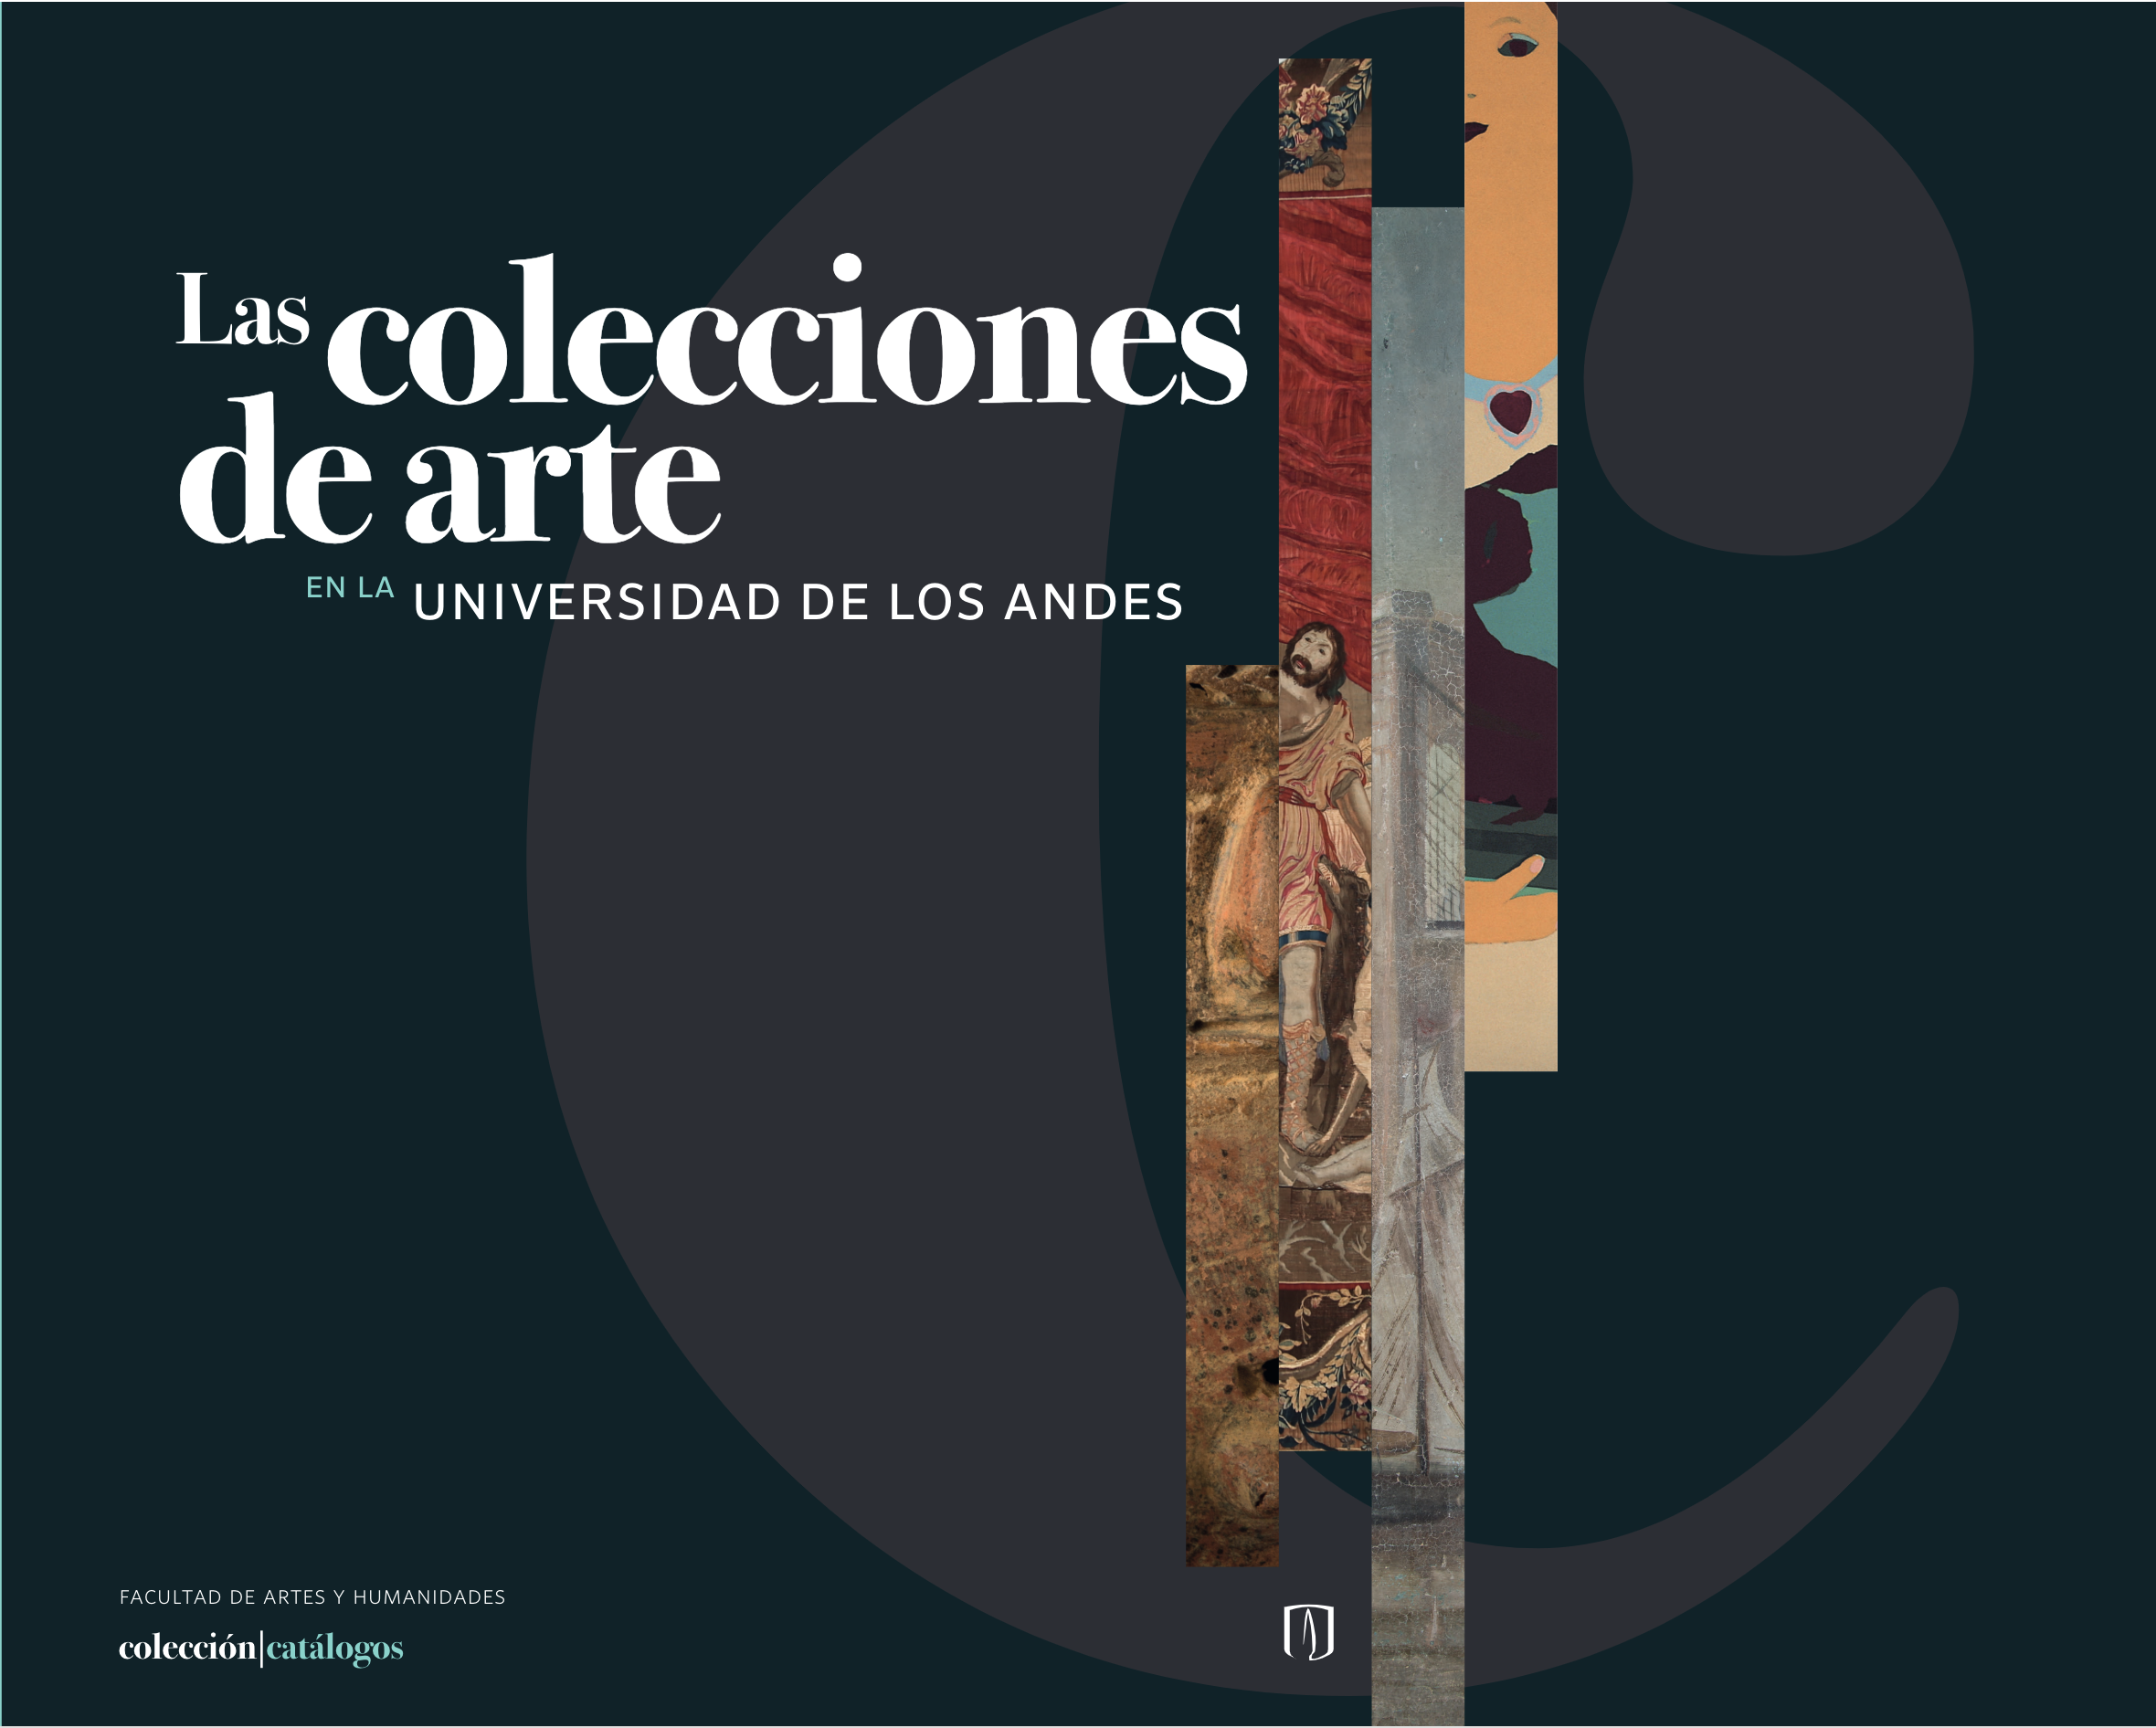 Las colecciones de arte en la Universidad de los Andes